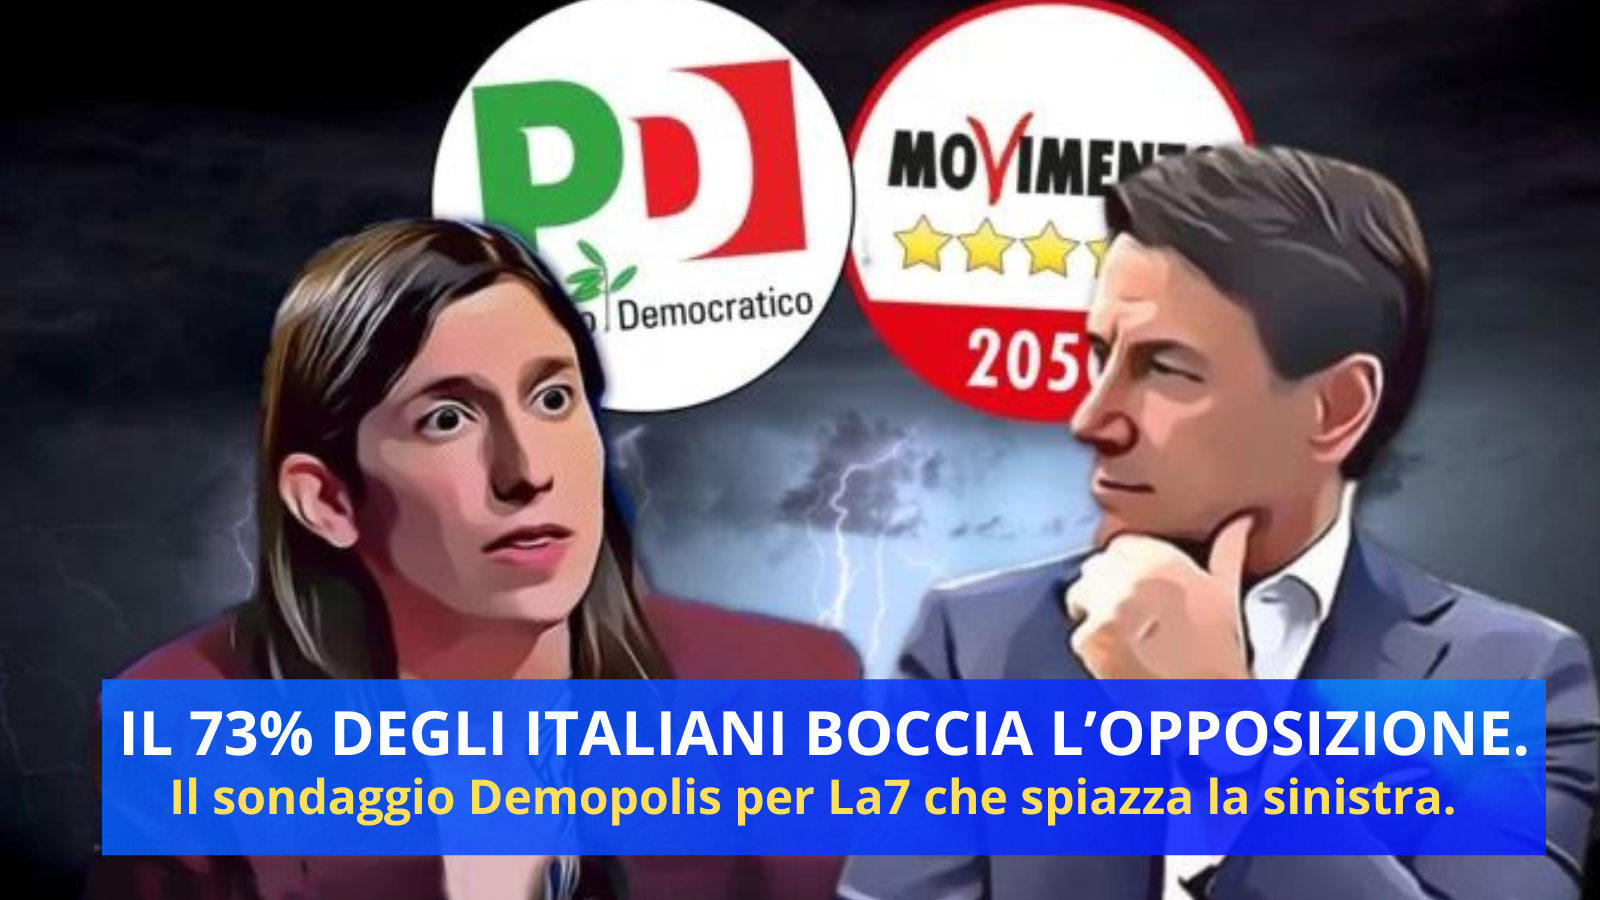 sondaggio demopolis: oppoosizione bocciata dal 73% degli italiani